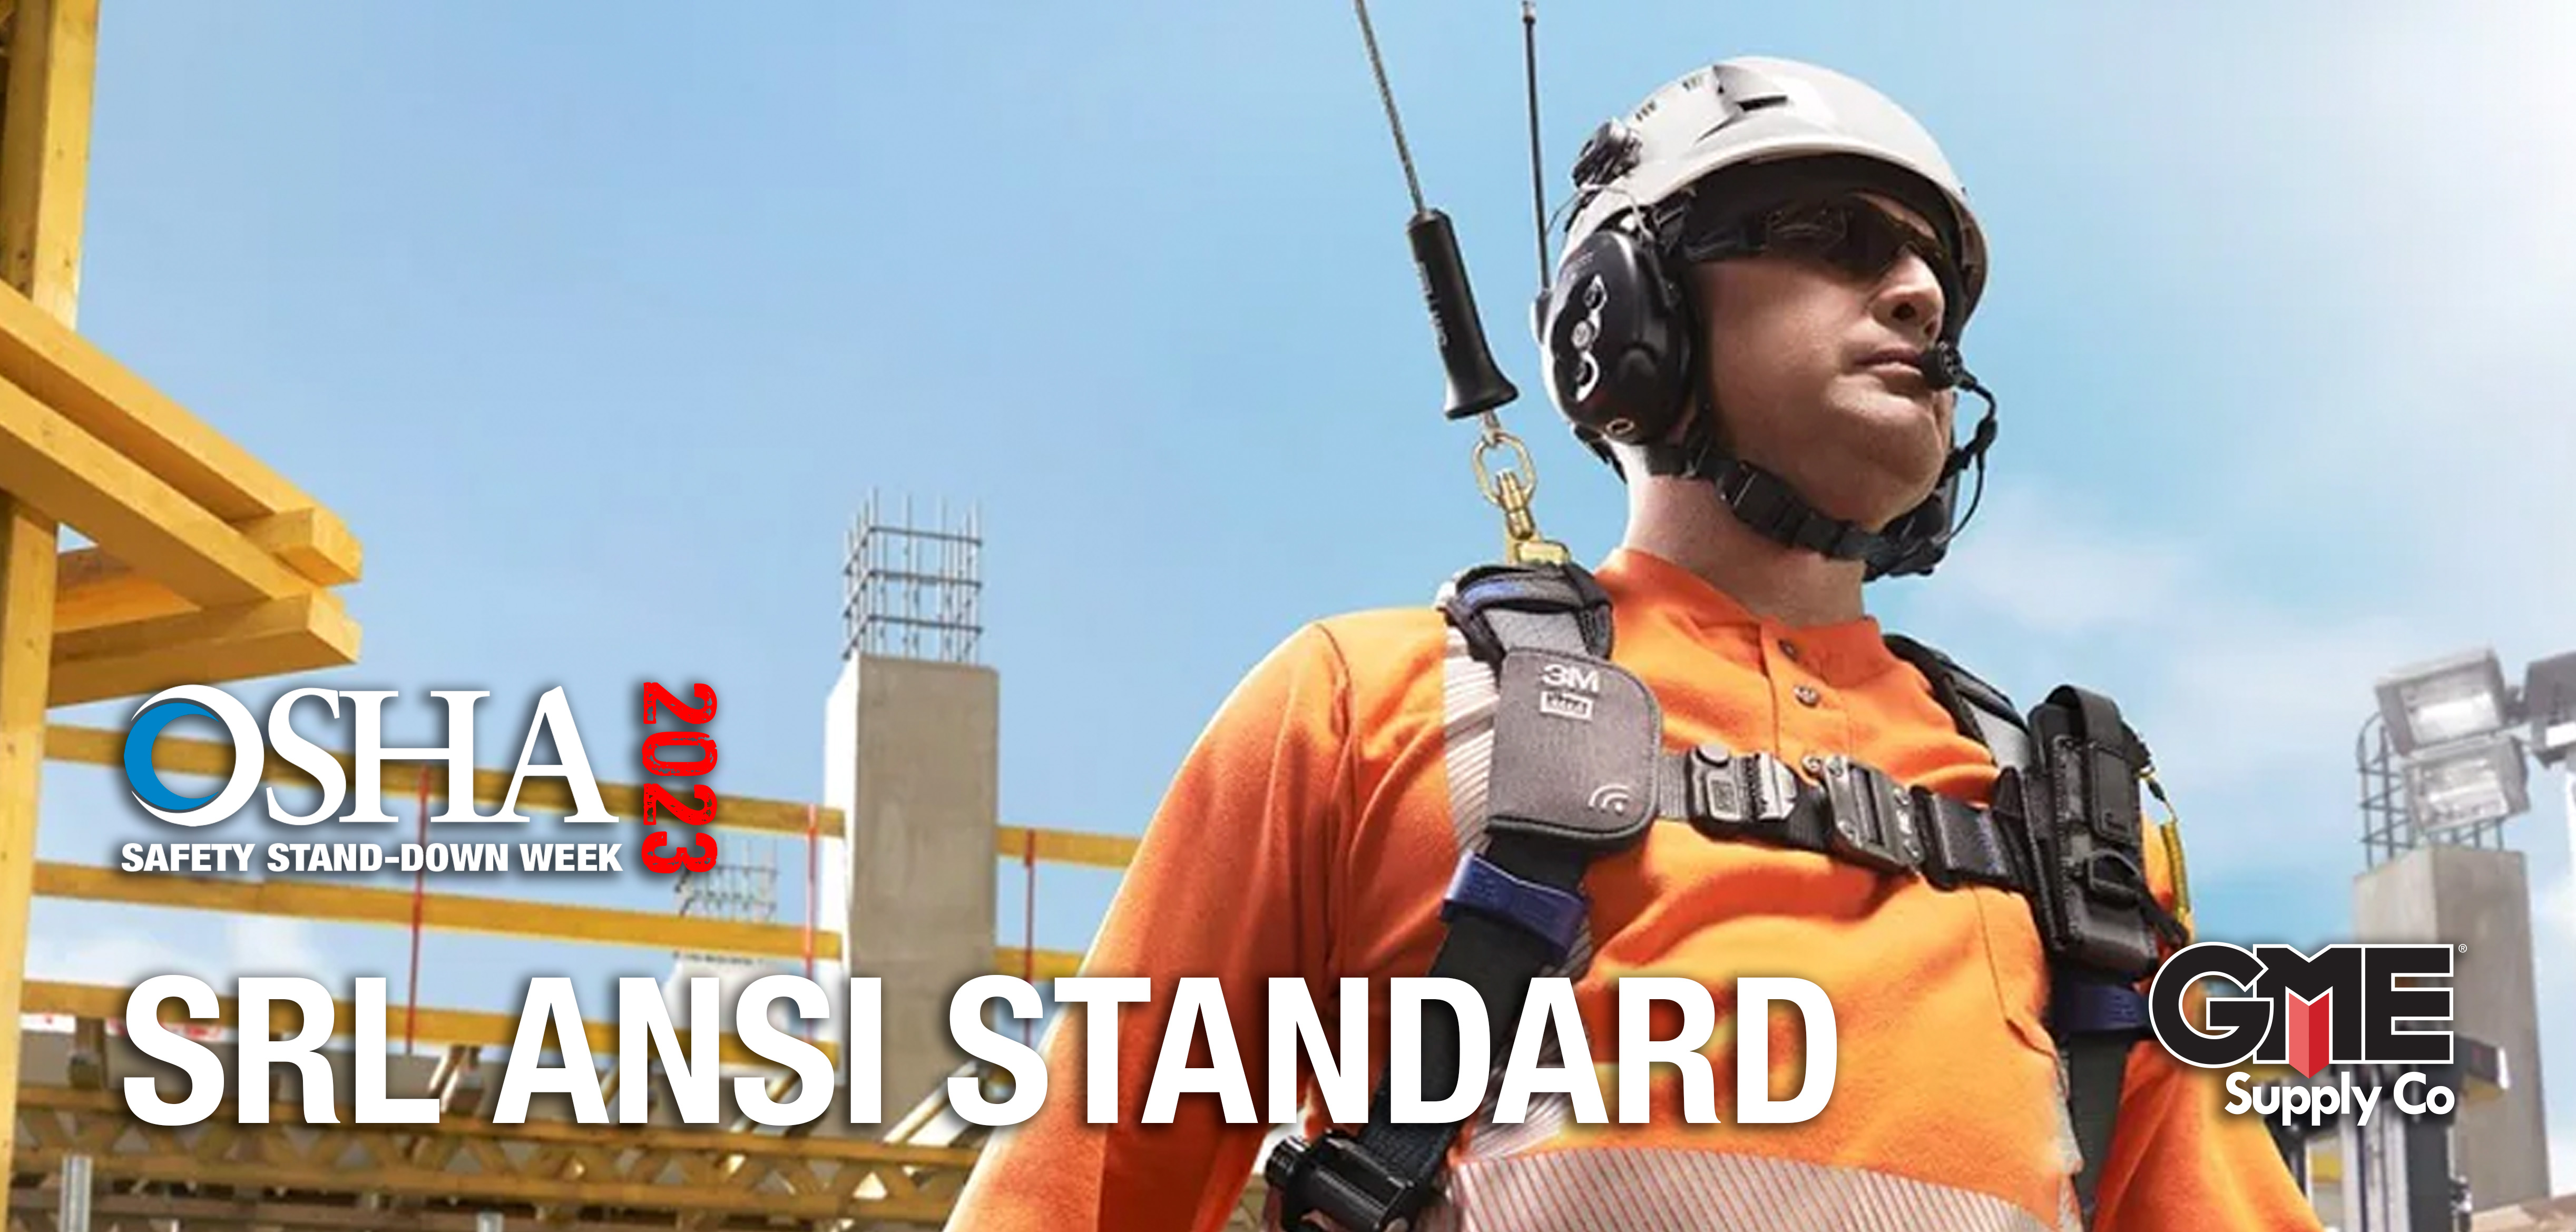 ANSI/ASSP Z359.14-2021 SRD Standard Update